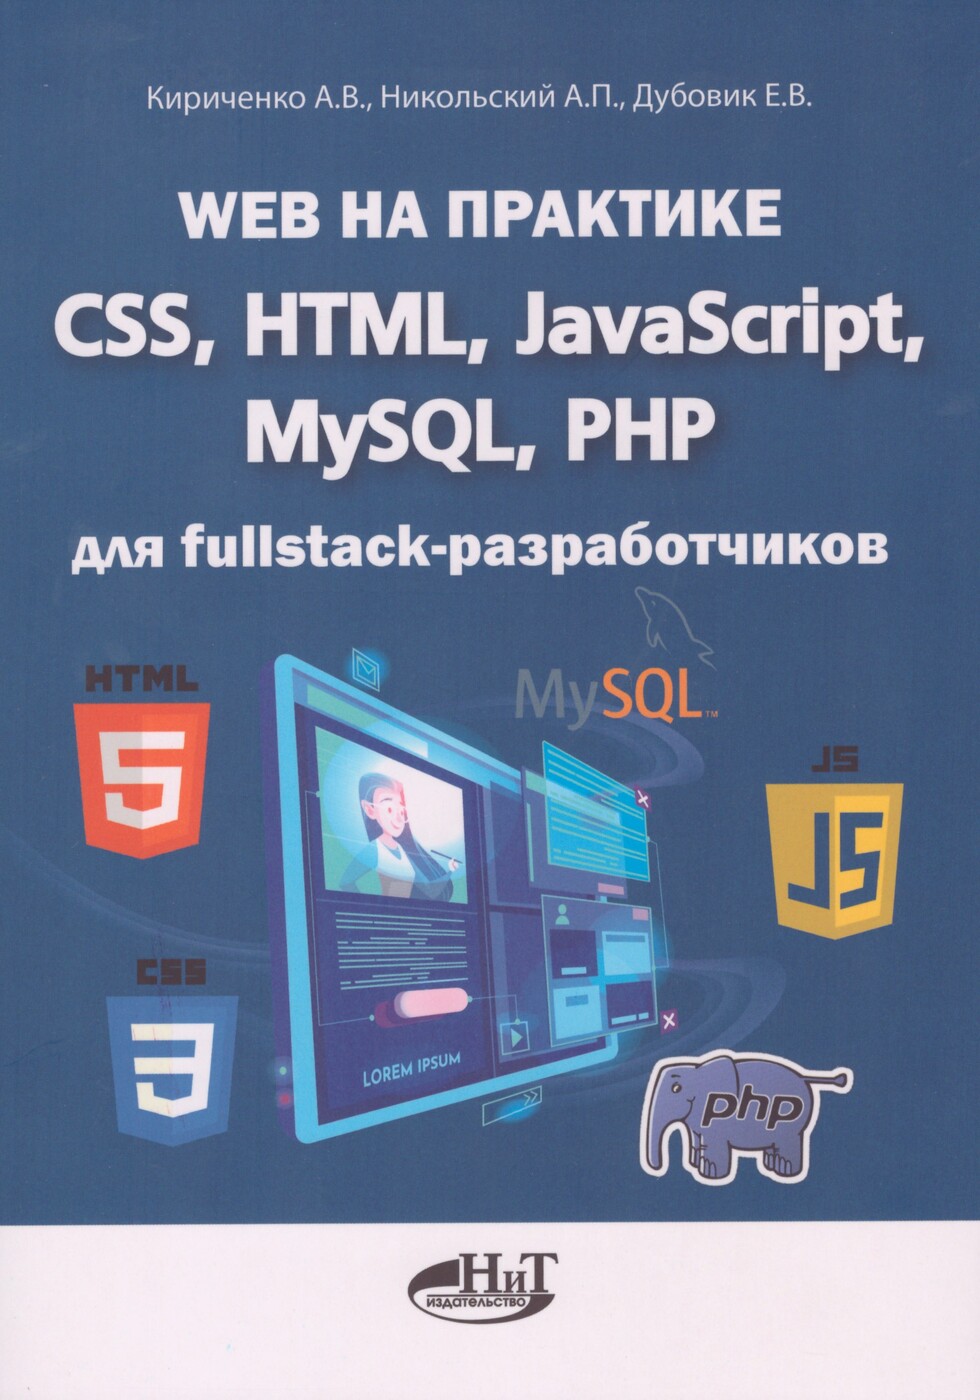 HTML, CSS и JavaScript в вебе (поймут даже чайники)